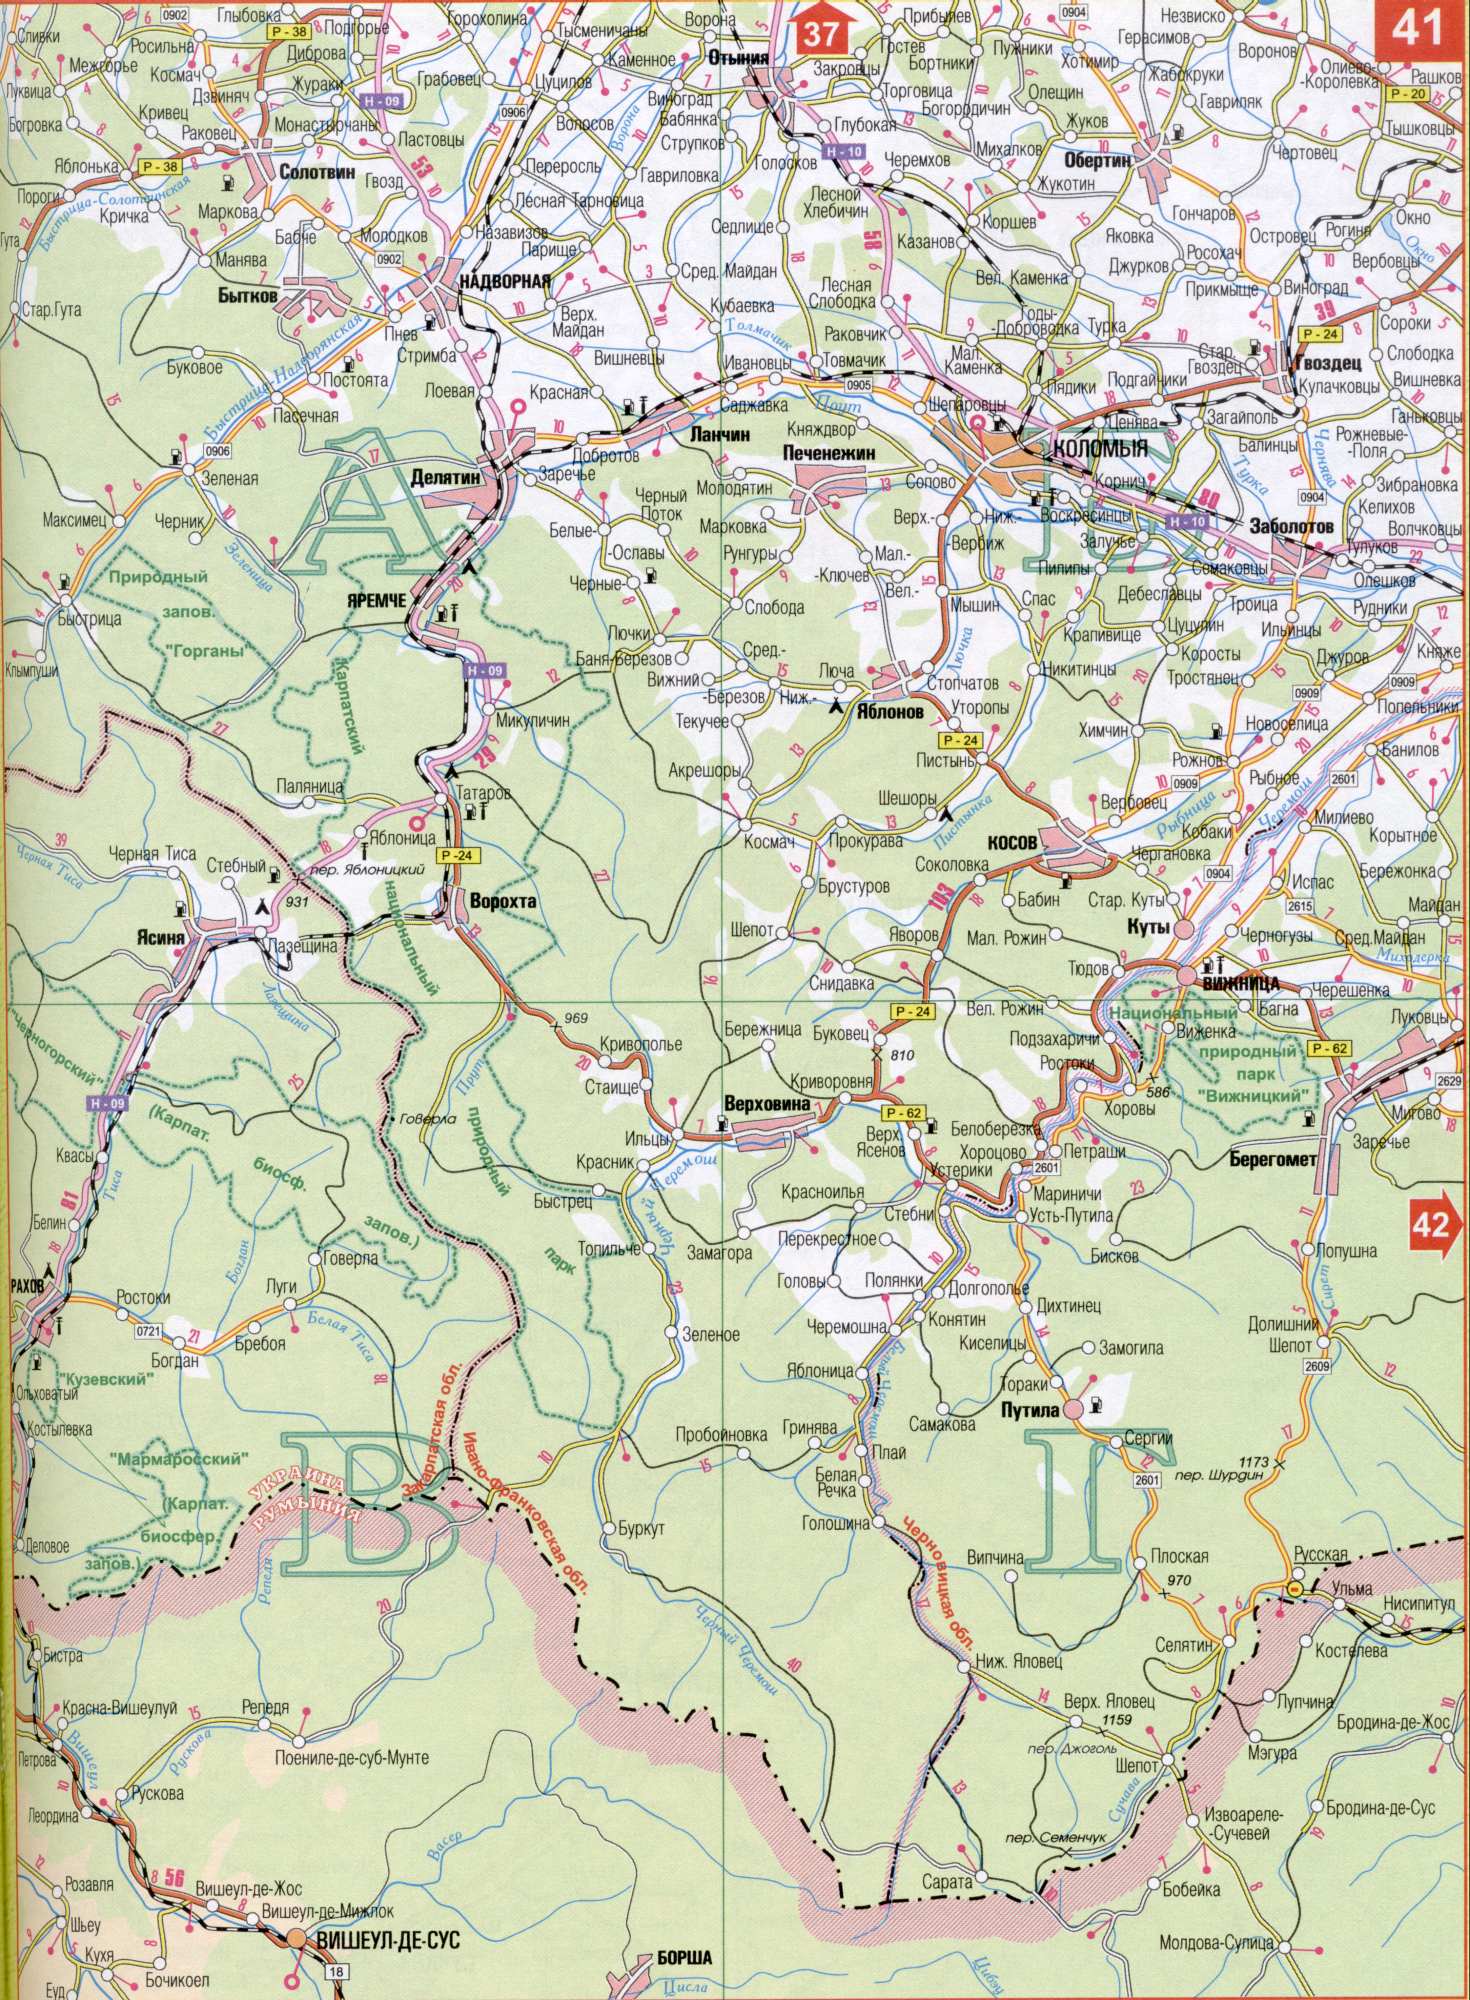 Karte von Iwano-Frankiwsk Region der Ukraine. Laden Sie eine detaillierte Karte von Autobahnen, A1 - den Fluss Prut